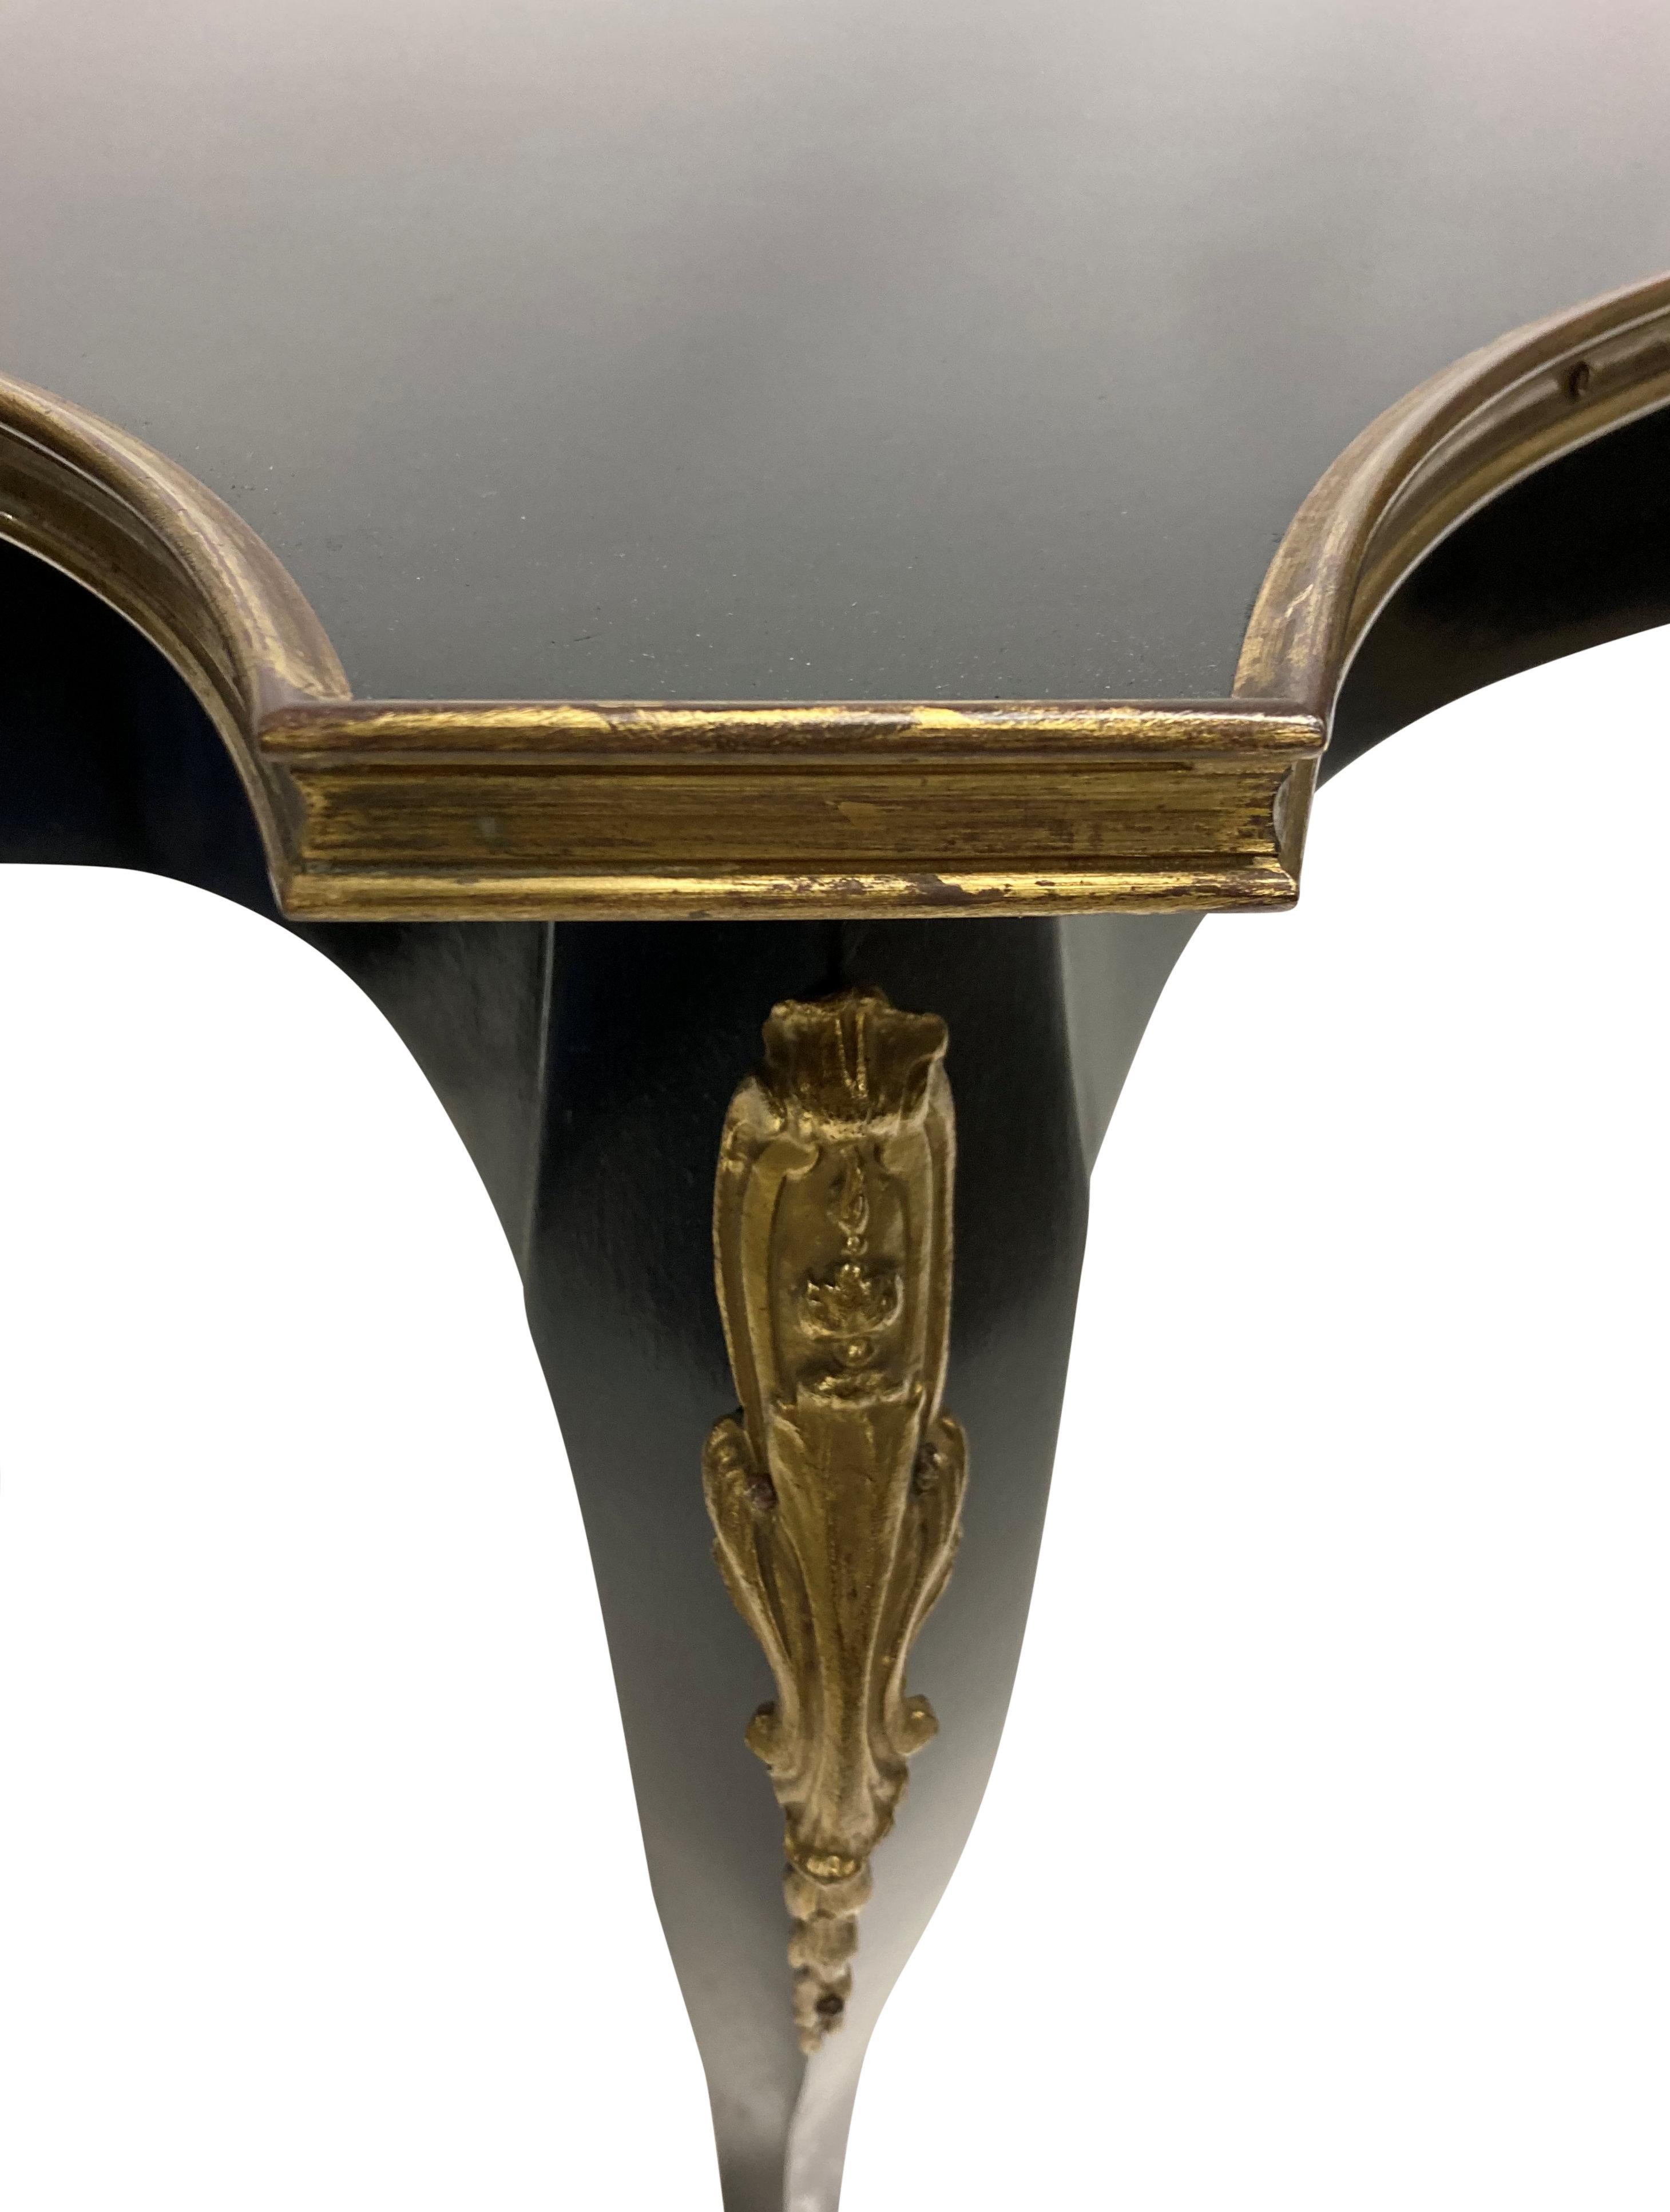 Ein französischer schwarz lackierter Beistelltisch im Stil Louis XV mit vergoldeten Bronzebeschlägen und eingesetzter Glasplatte.